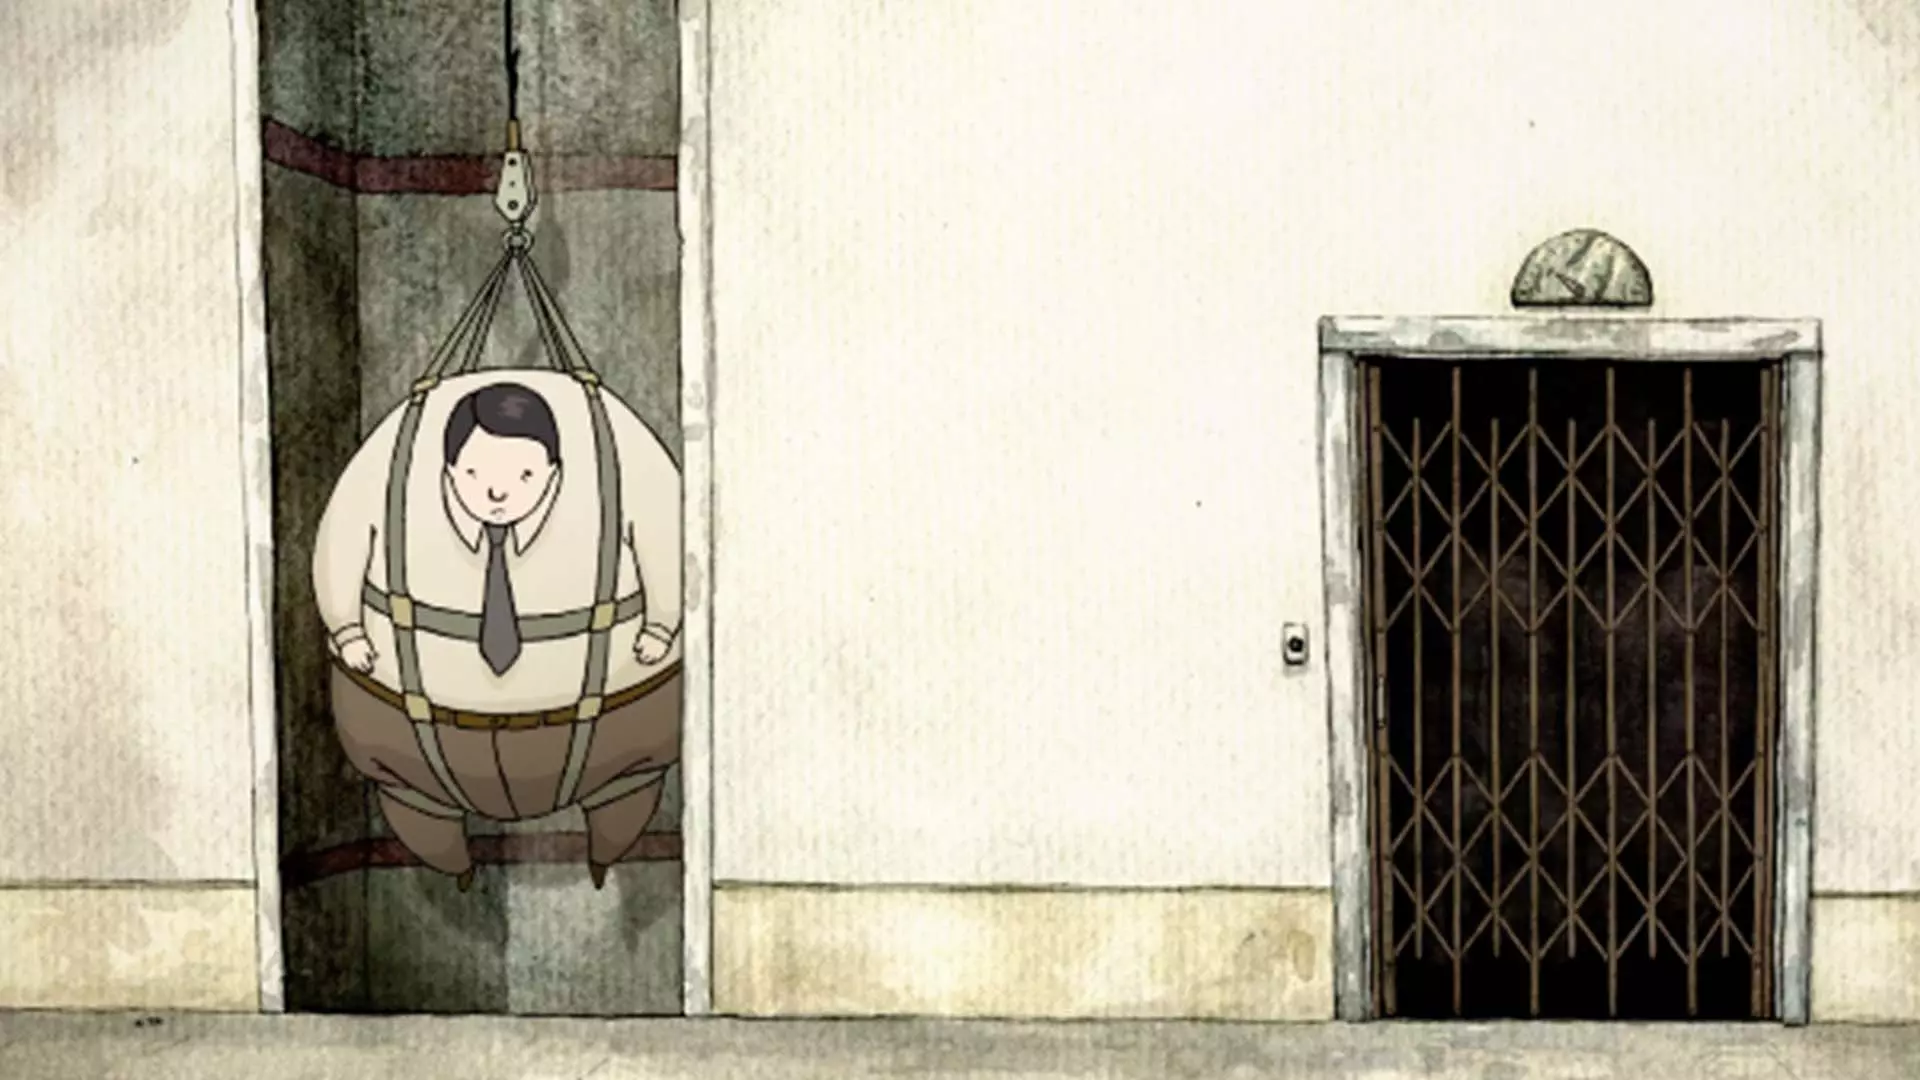 در انیمیشن کوتاه The Employment یک مرد چاق وظیفه یک آسانسور را دارد